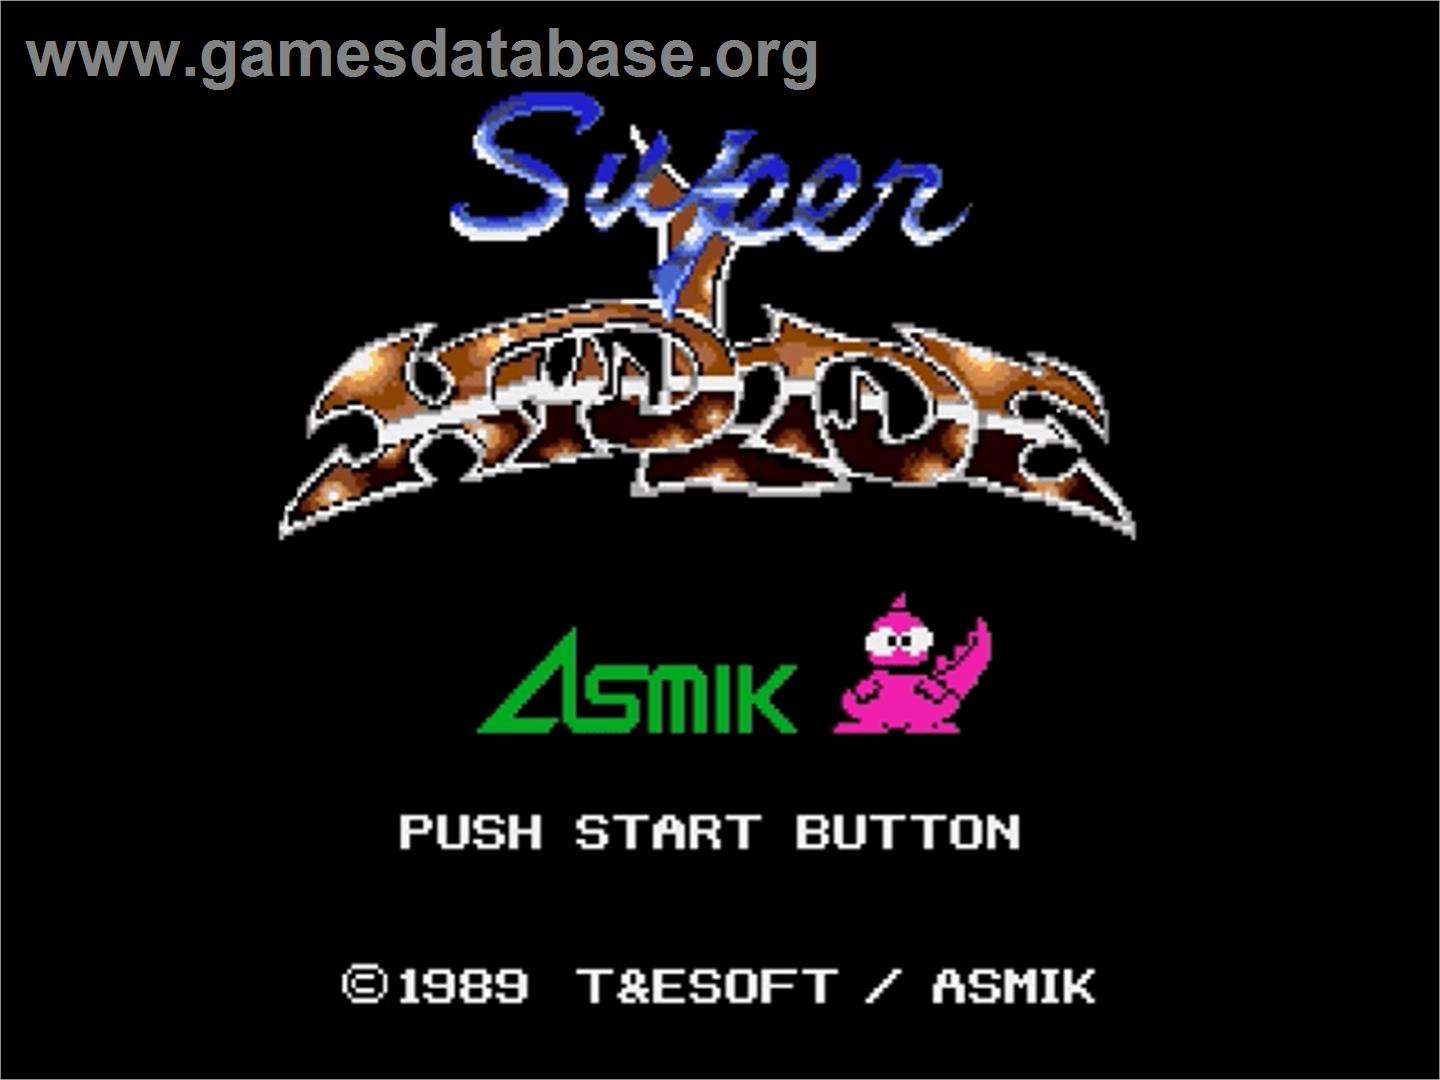 Super Hydlide - Sega Genesis - Artwork - Title Screen